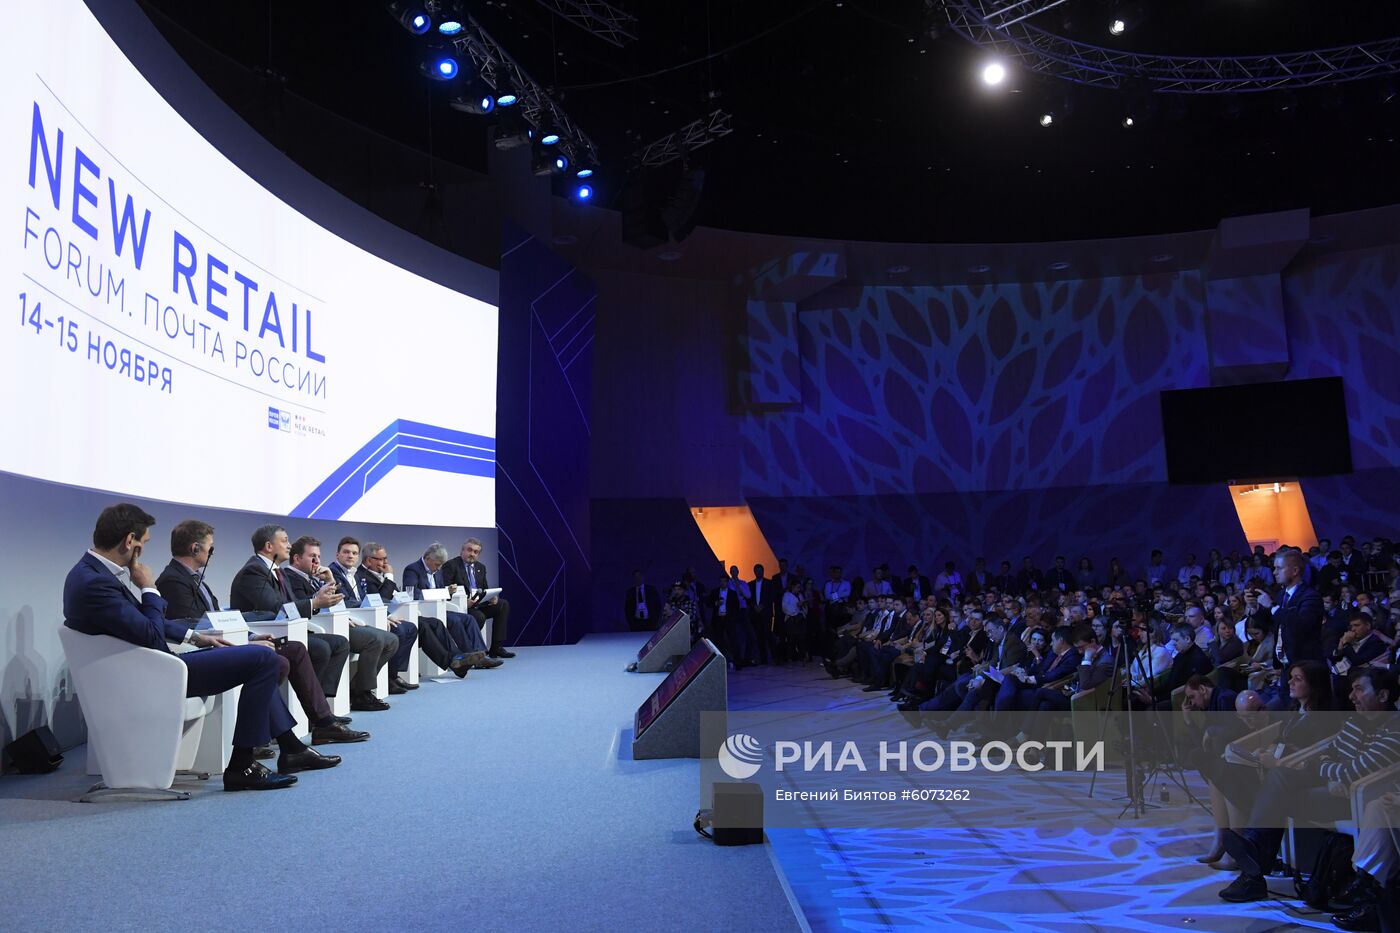 Форум New Retail Forum. Почта России